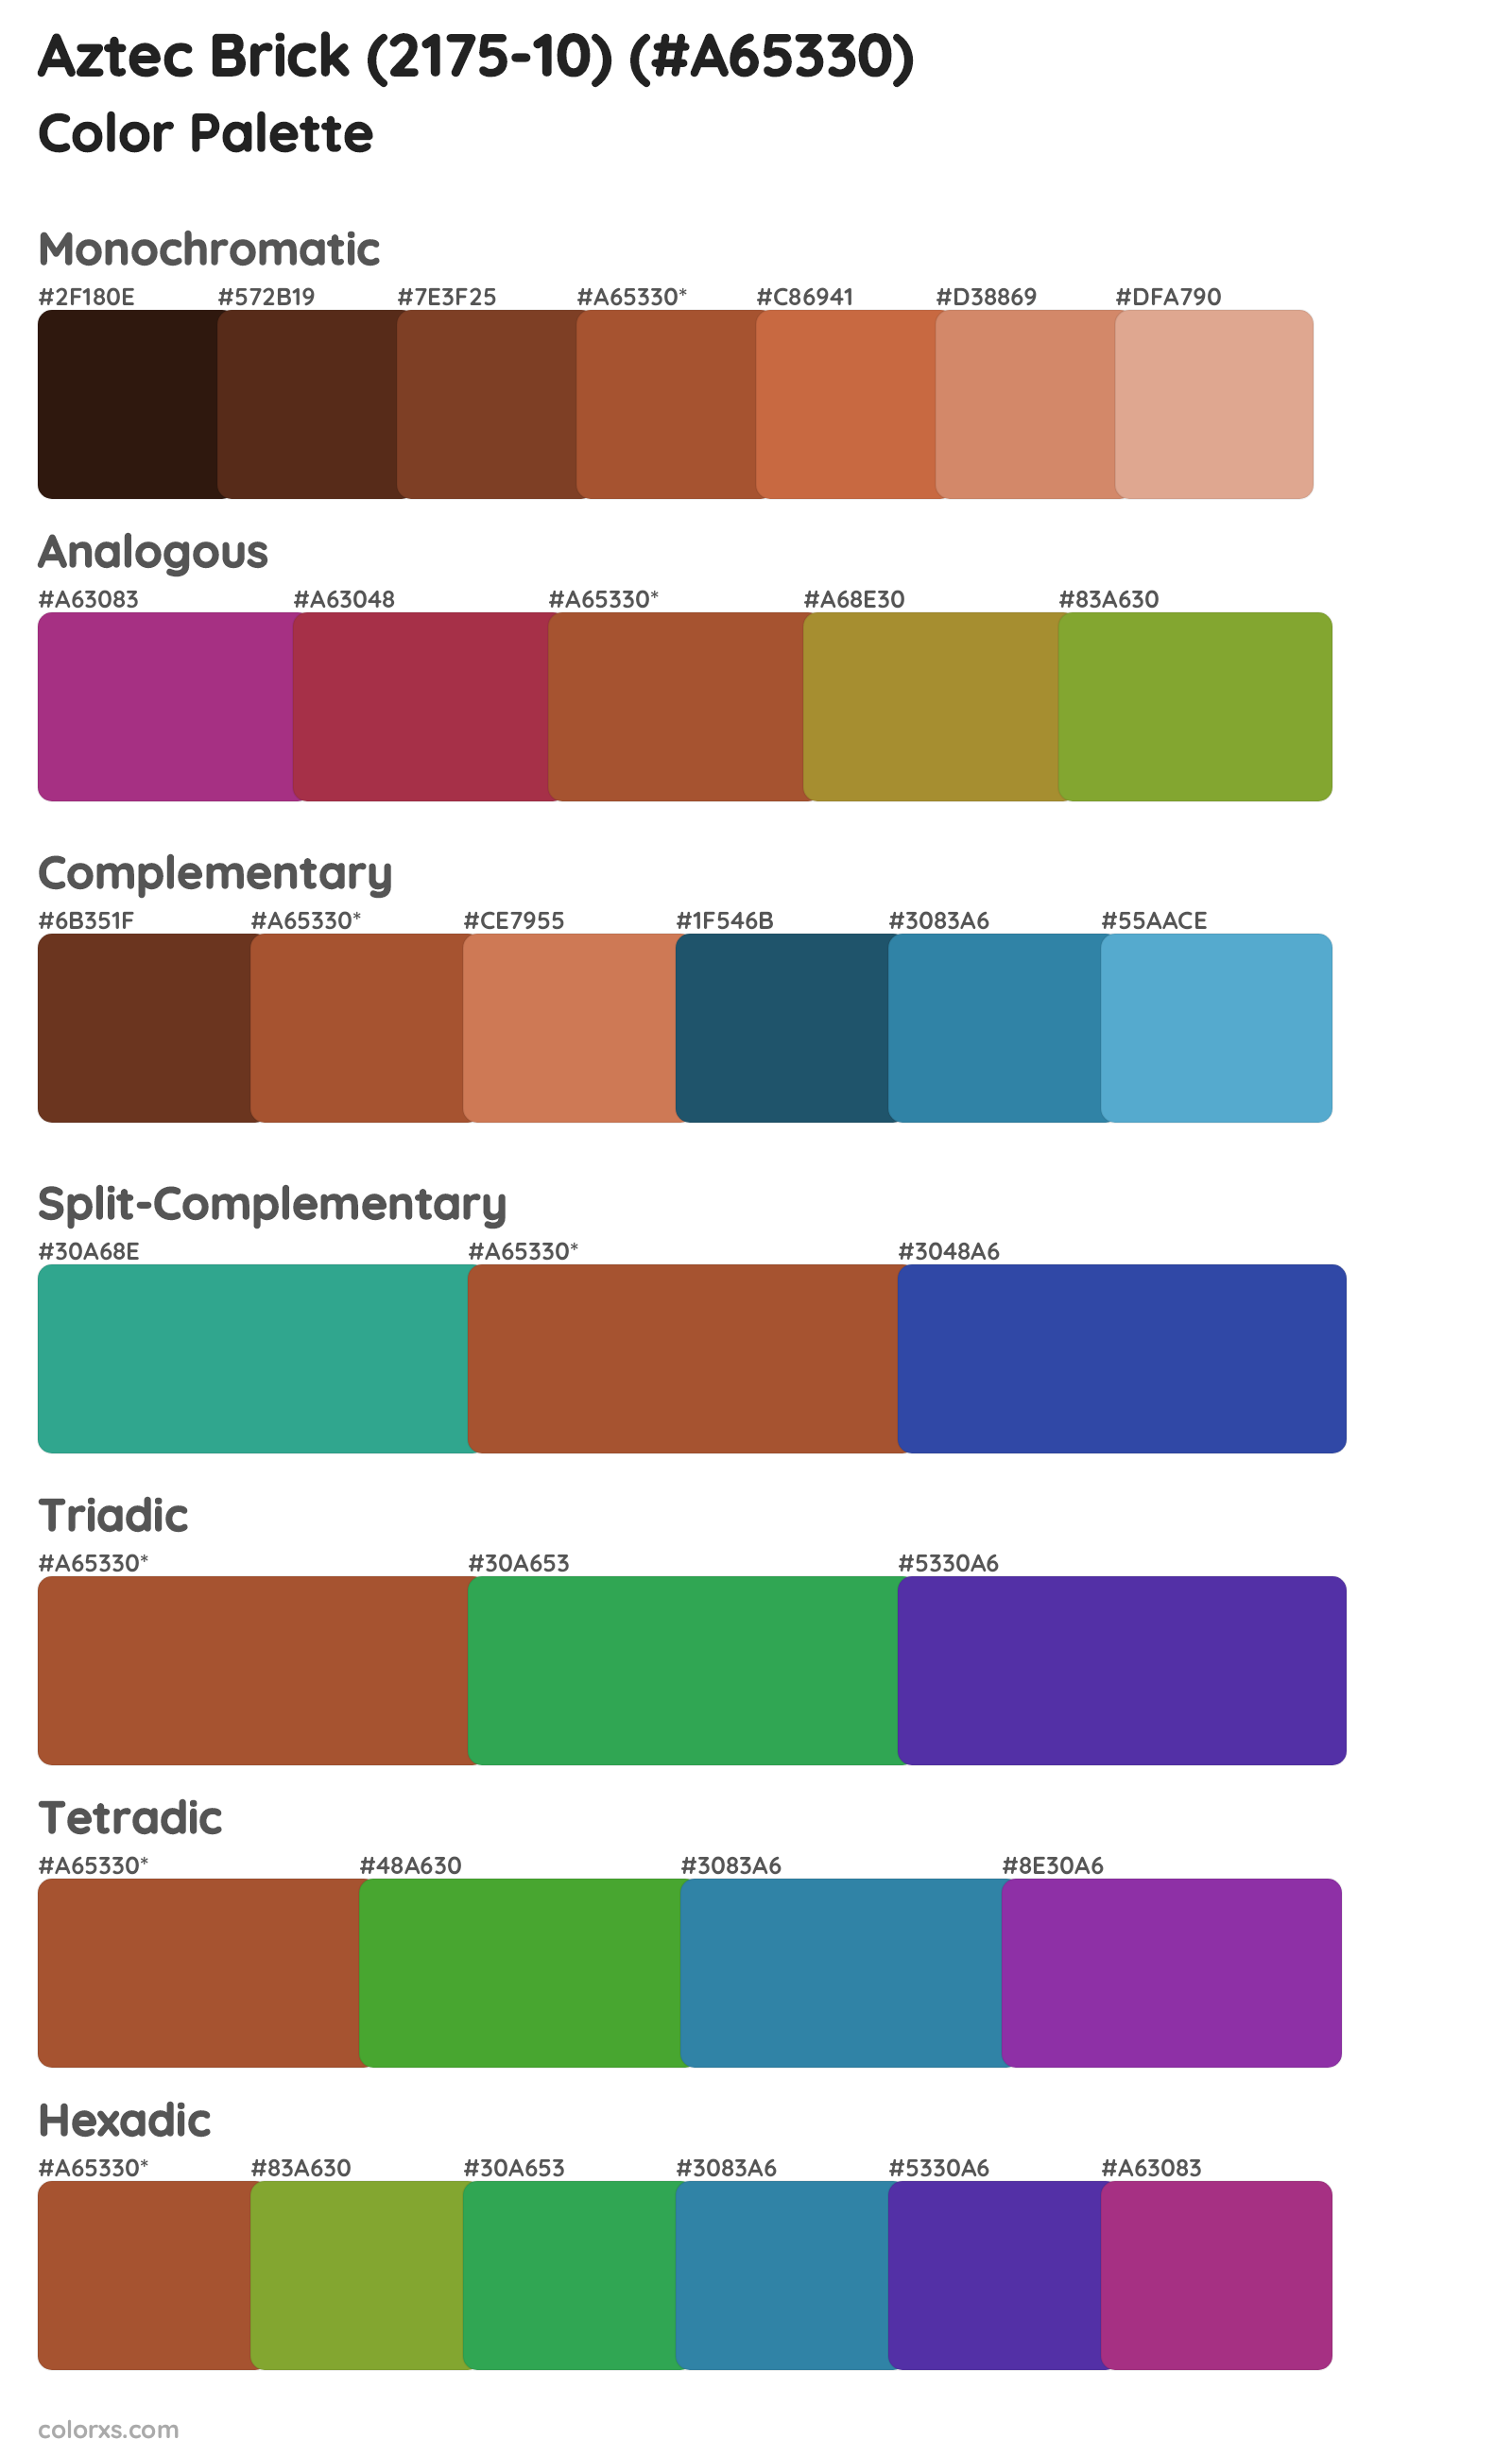 Aztec Brick (2175-10) Color Scheme Palettes